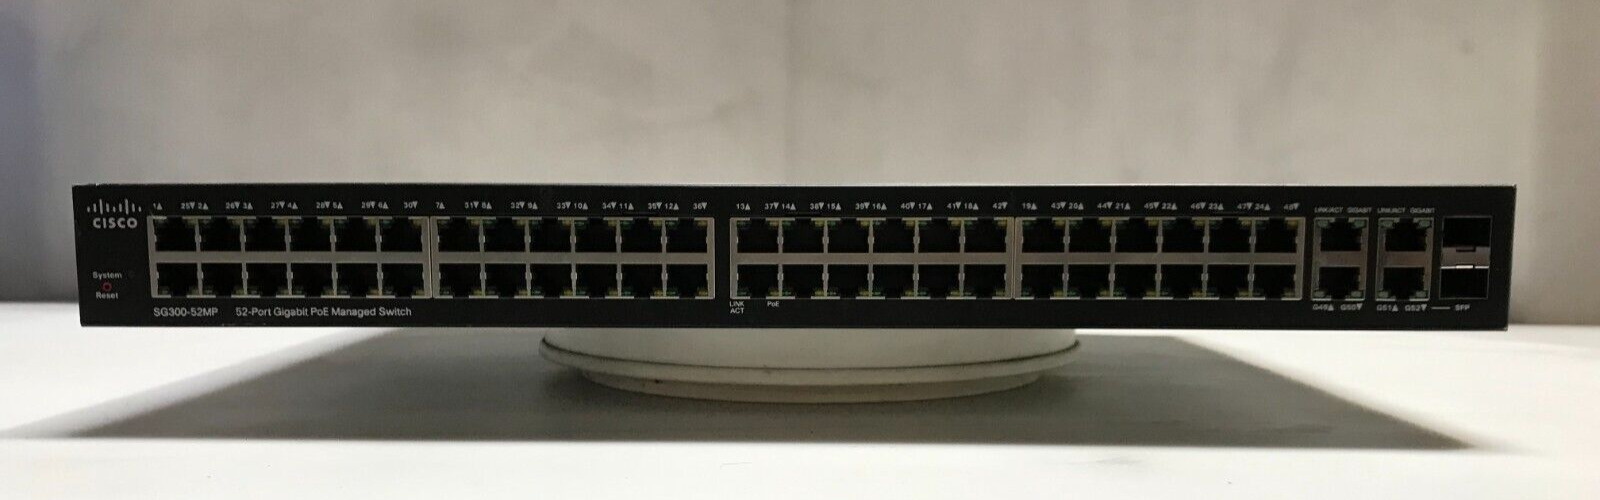 CISCO SG300-52MP-K9 Network Switches (52-Ports)